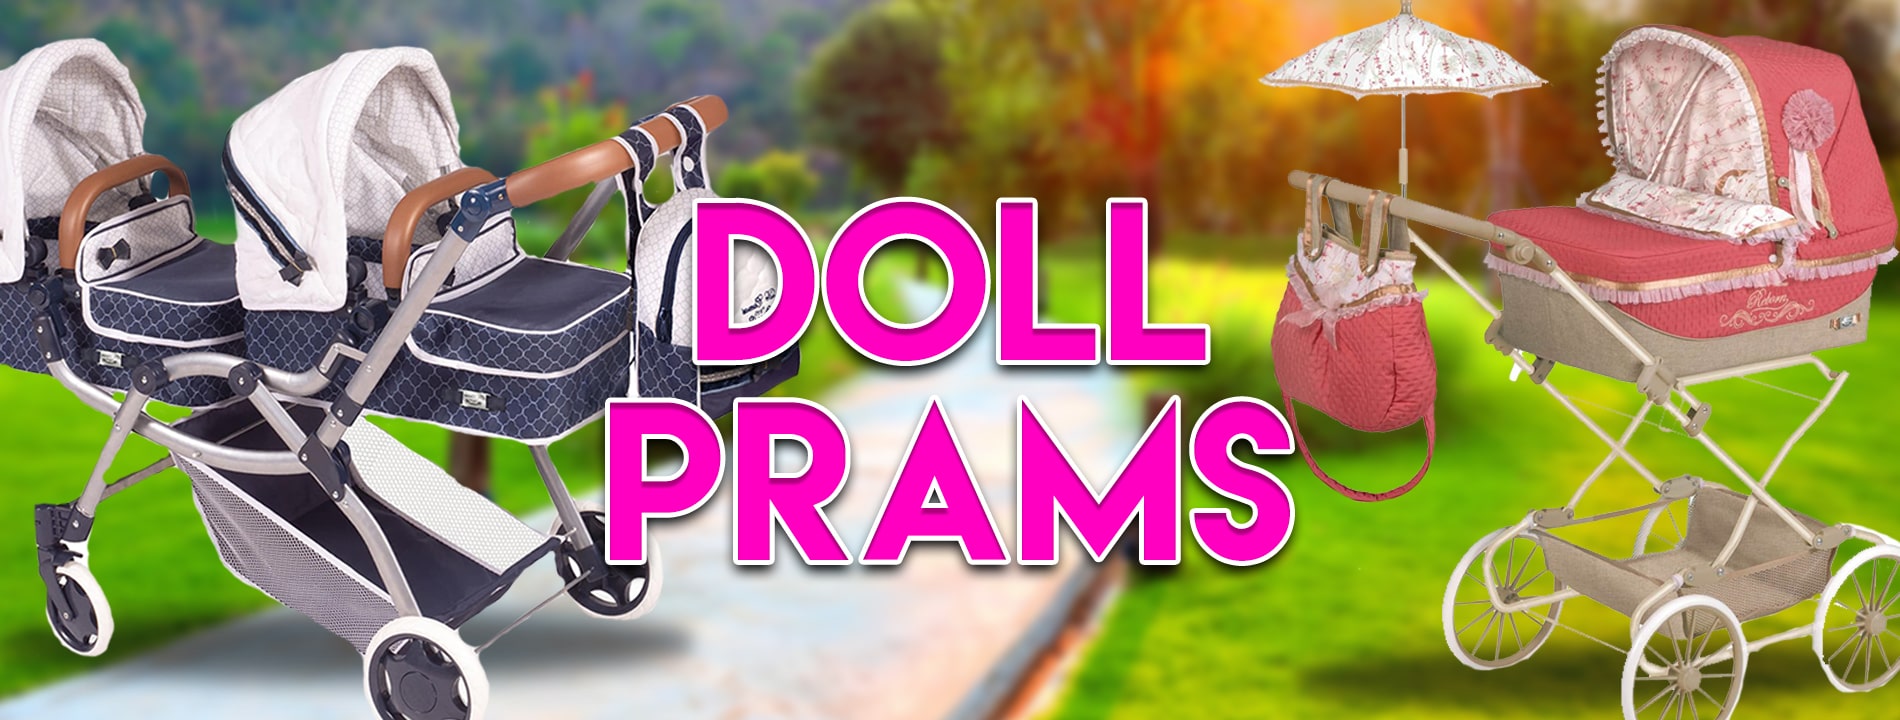 Doll Prams Banner